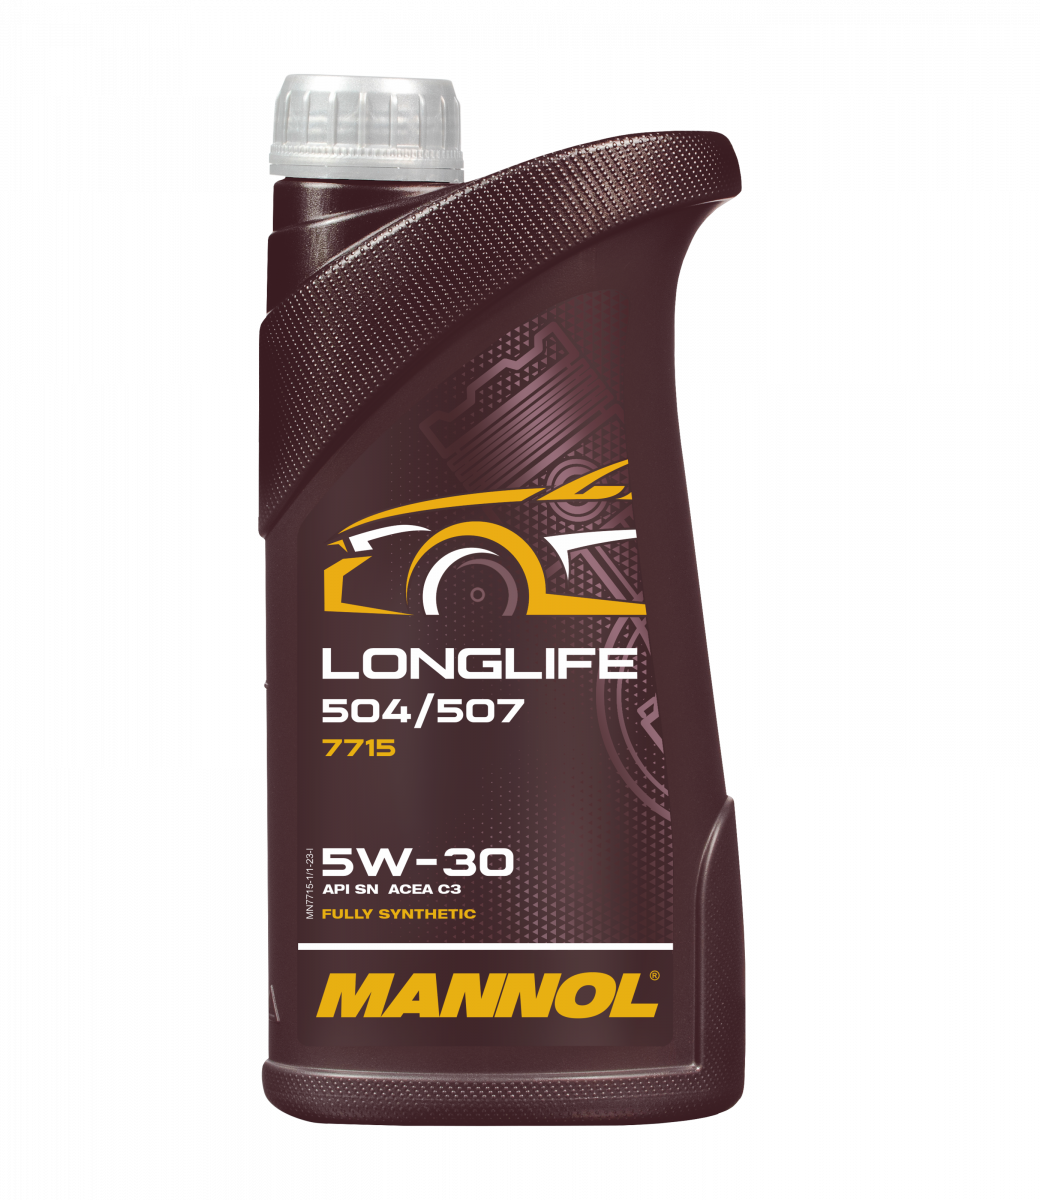 MANNOL Longlife 504/507 5W-30